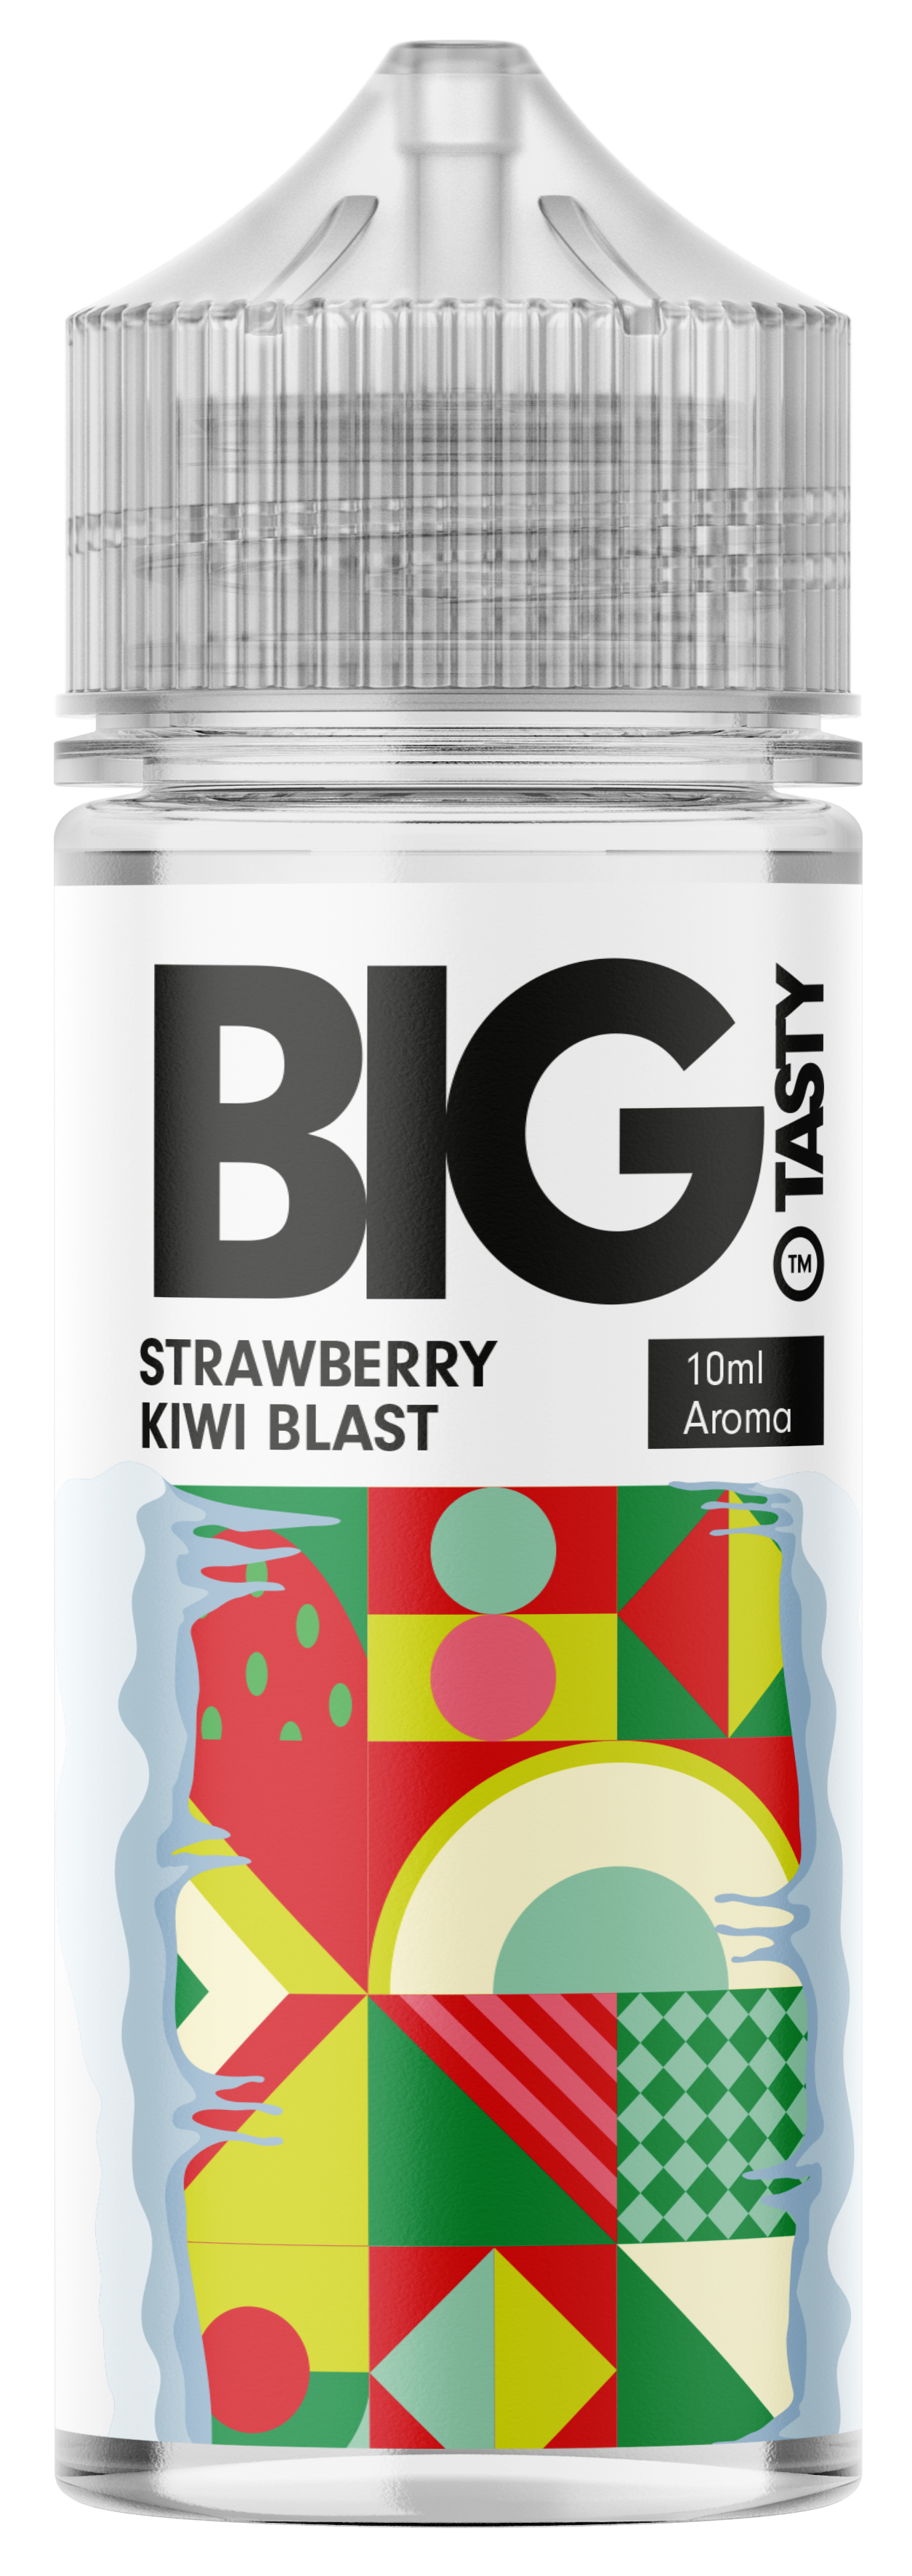 Big Tasty - Strawberry Kiwi Blast  Aroma 10ml